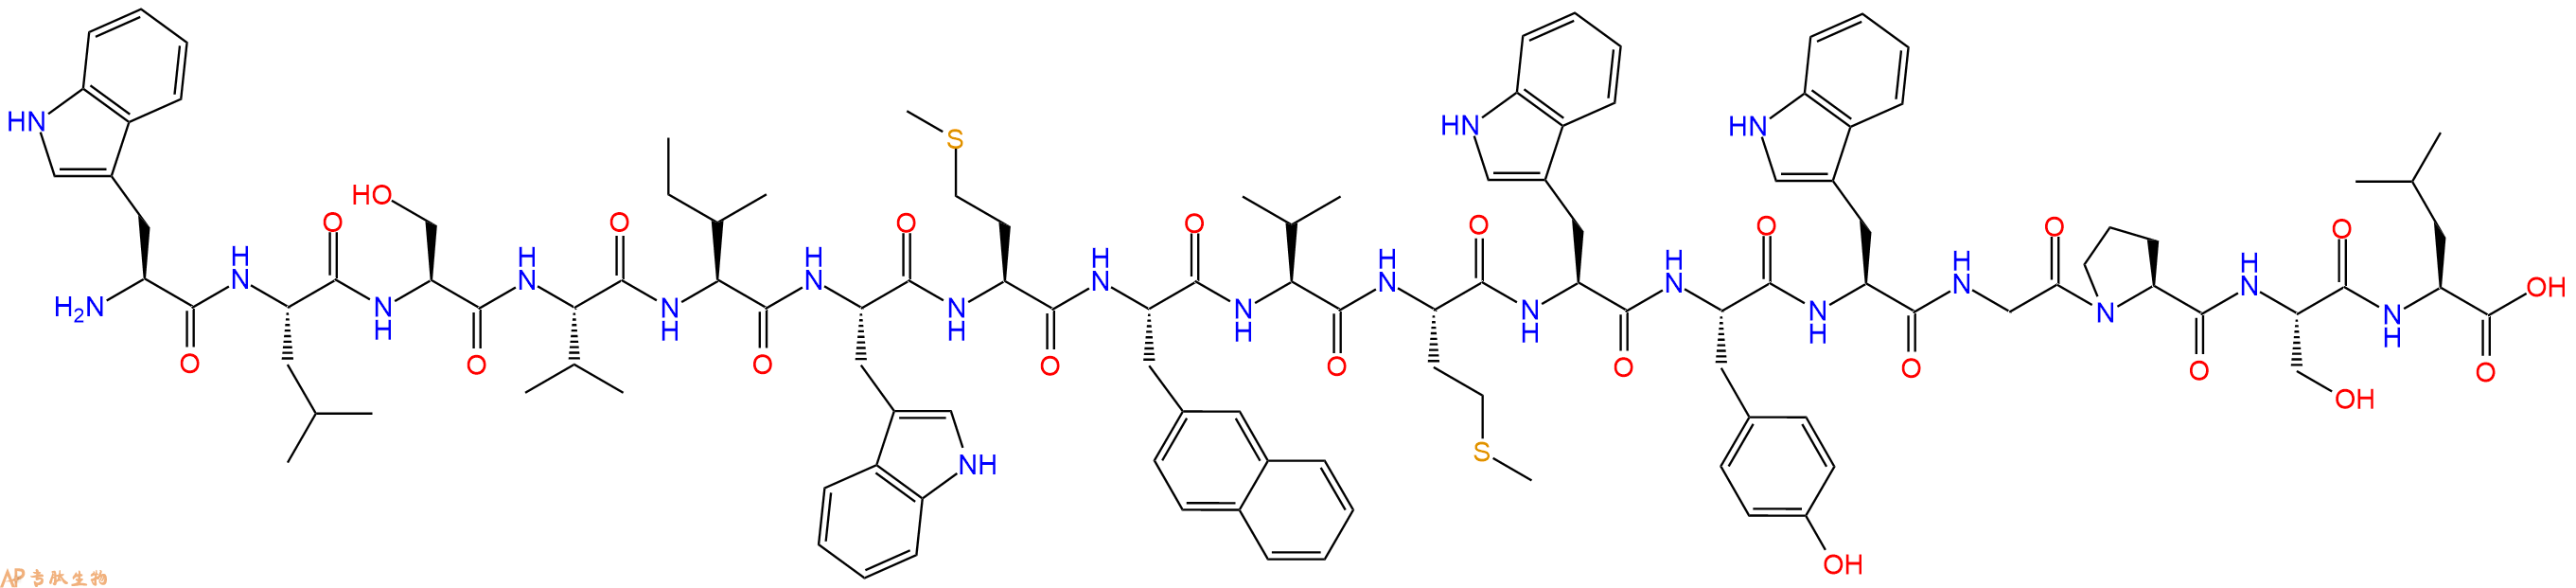 专肽生物产品H2N-Trp-Leu-Ser-Val-Ile-Trp-Met-Nal-Val-Met-Trp-Tyr-Trp-Gly-Pro-Ser-Leu-COOH